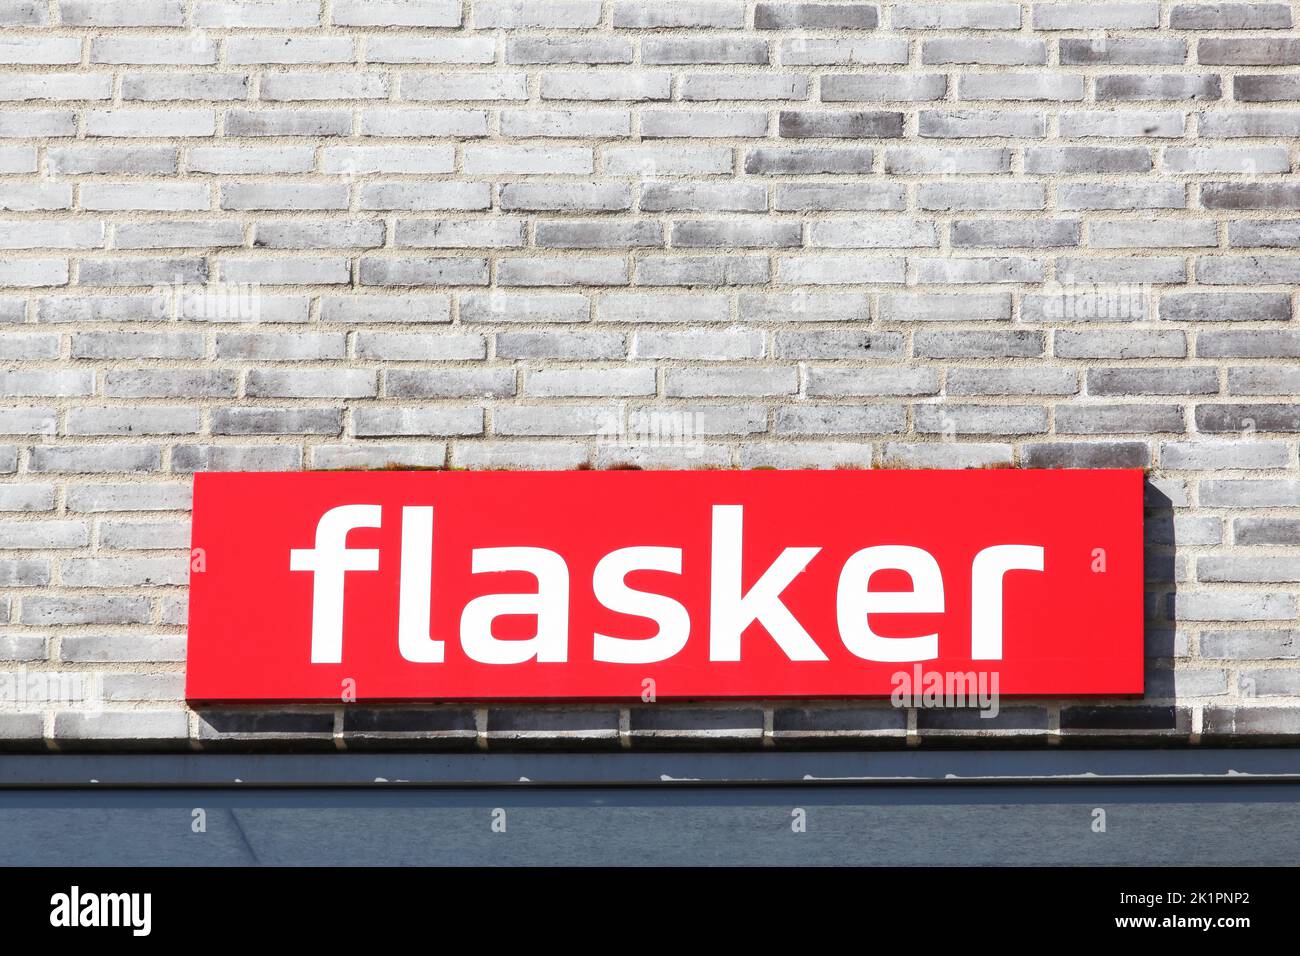 Flasker firmar en un muro en Dinamarca. El sistema de depósito de recipientes reutilizables consta de botellas de plástico y vidrio que una vez adquiridas son reutilizables Foto de stock